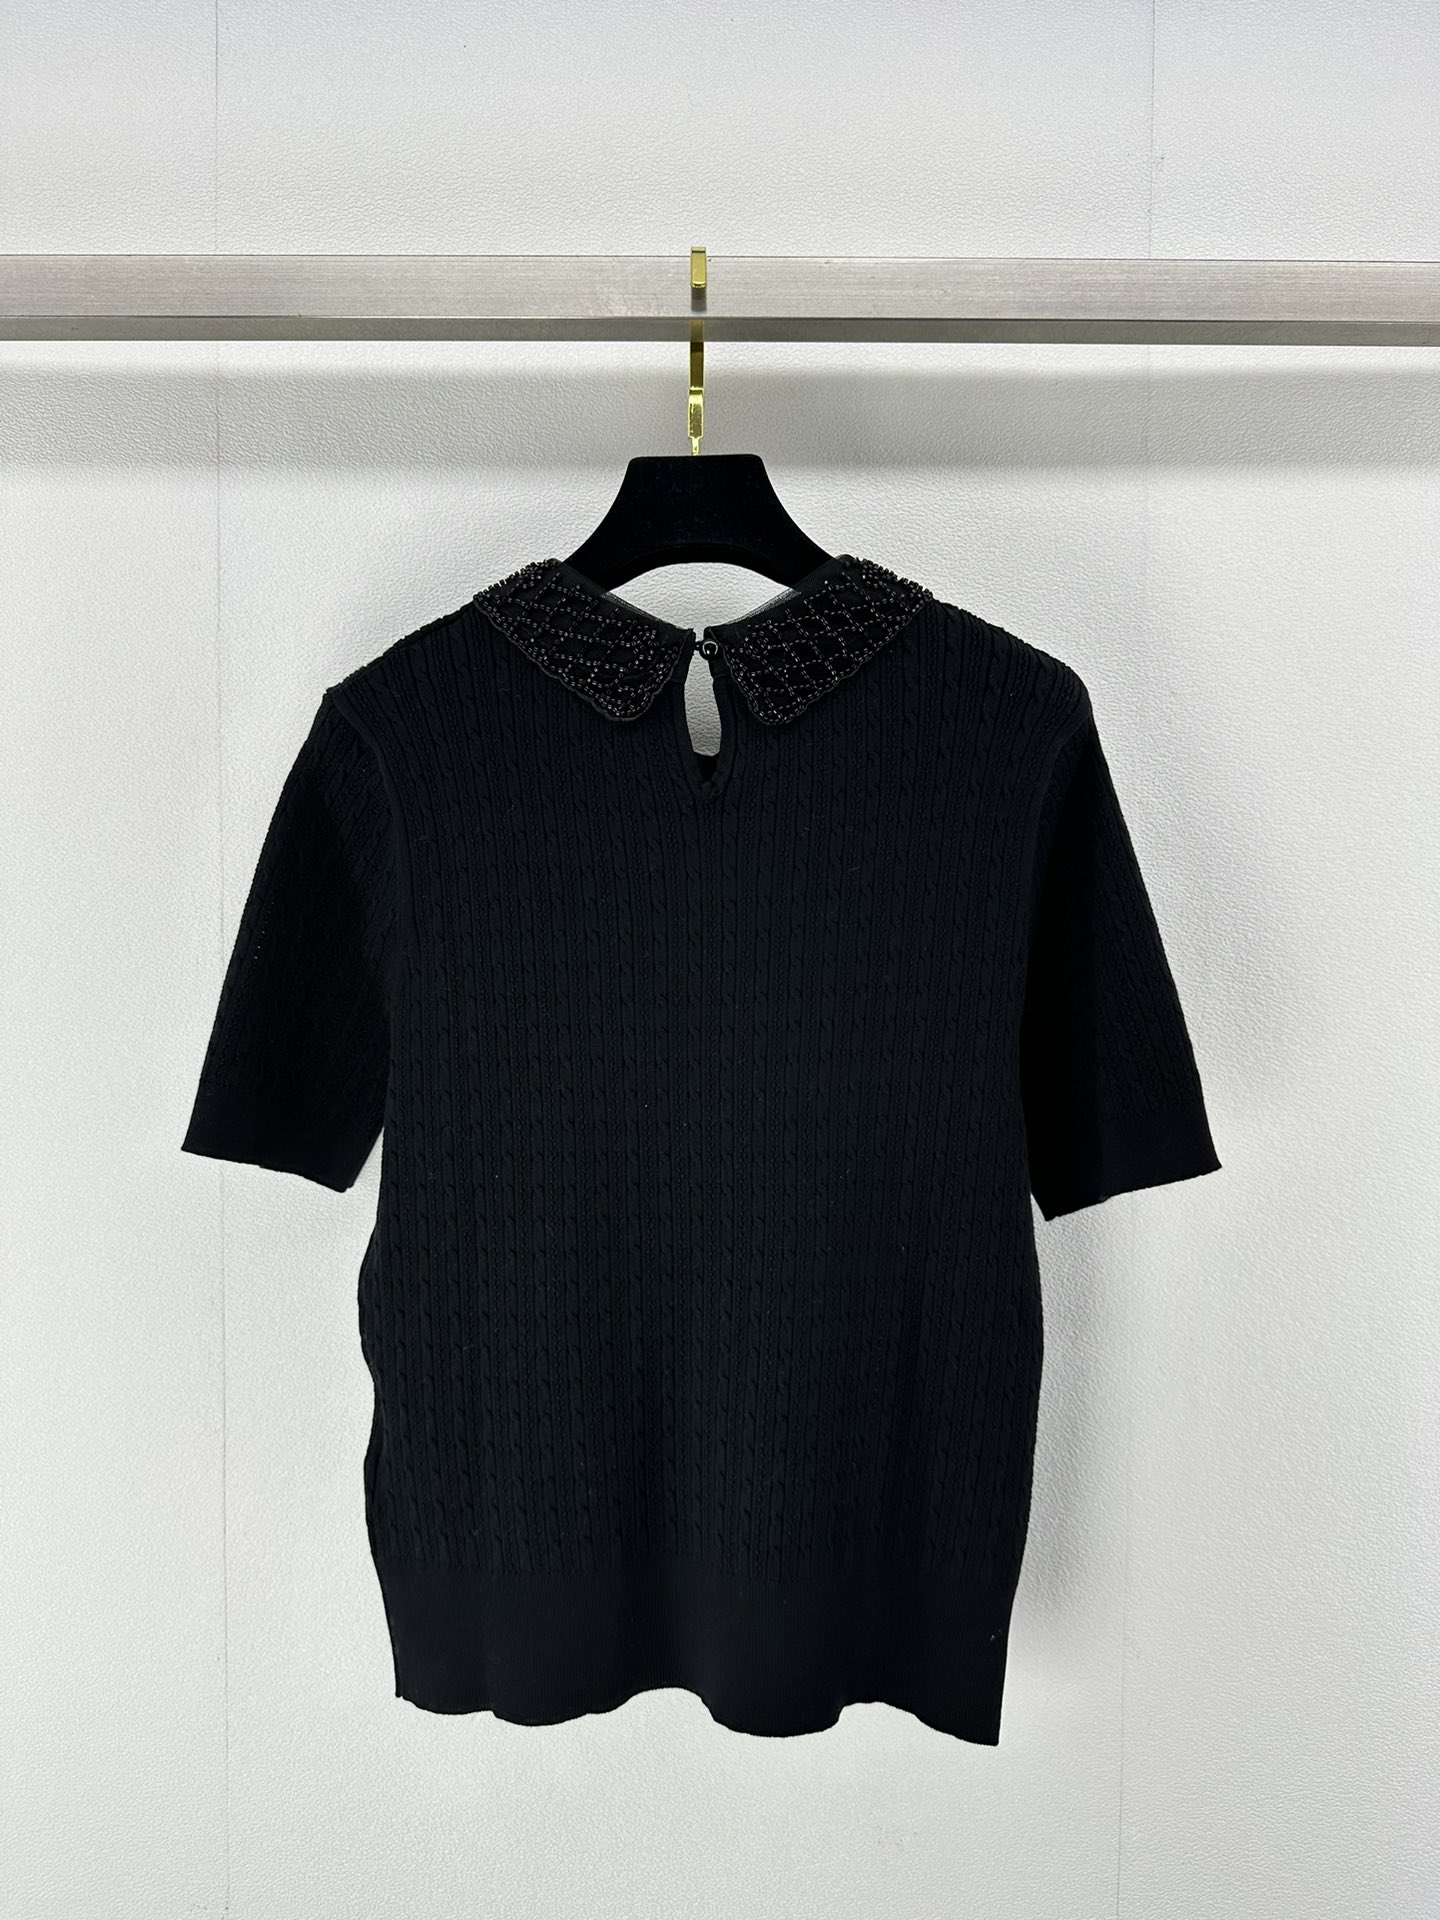 ミュウミュウに似たブランド激安通販 短袖 Tシャツ トップス 軽量 薄い シンプル 純綿 HOT品質保証 ブラック_9